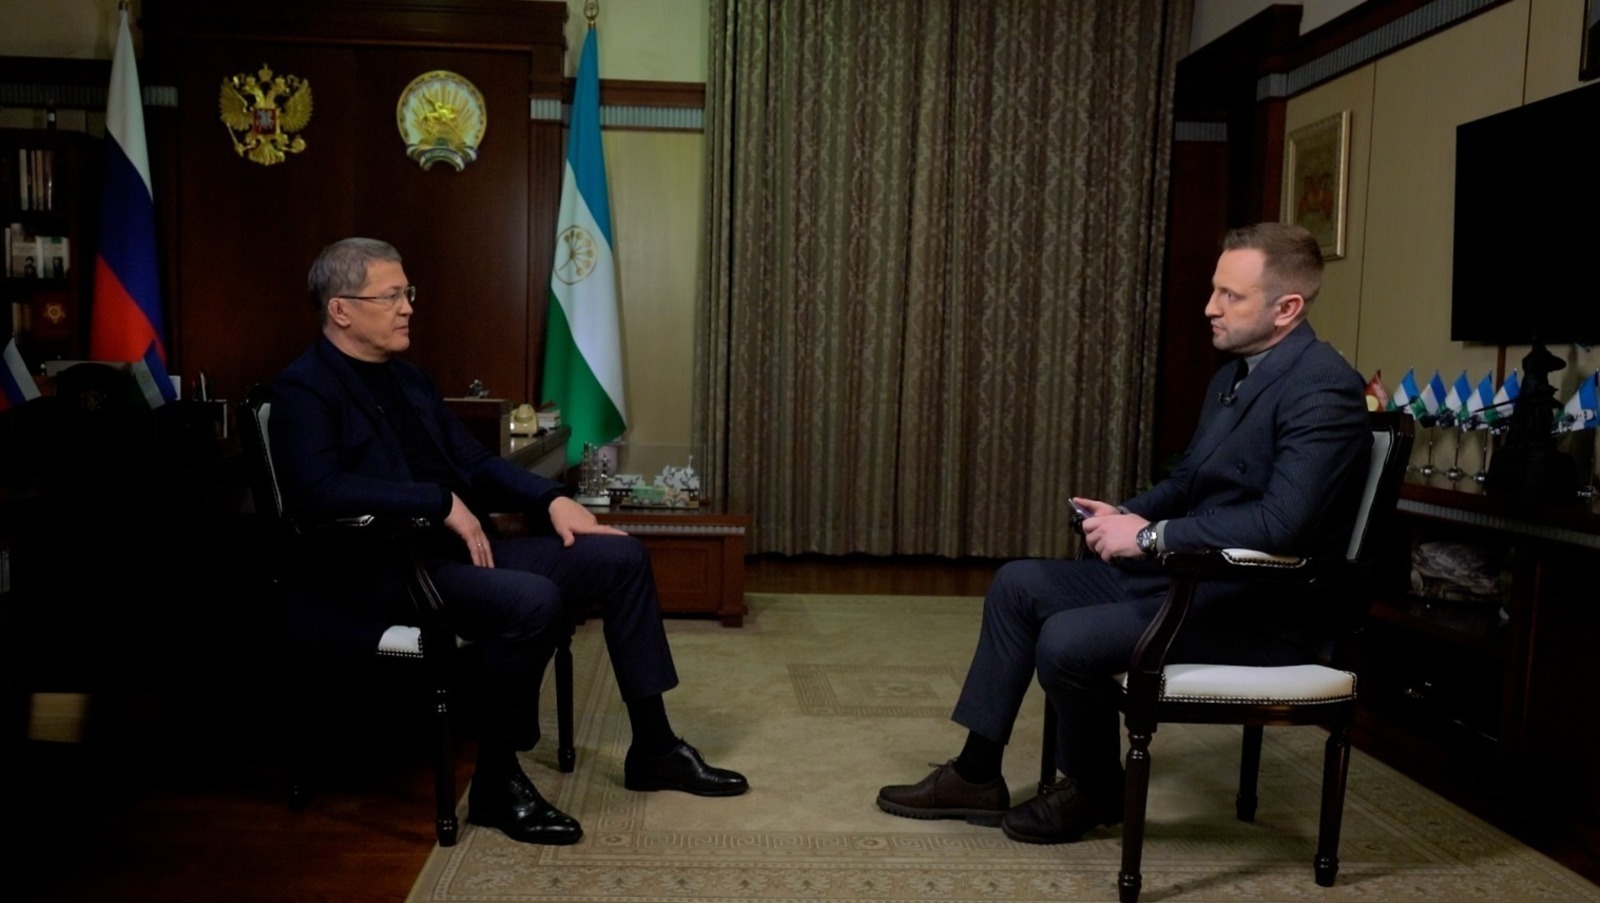 Глава Башкирии рассказал в телеинтервью о приоритетах в своей деятельности